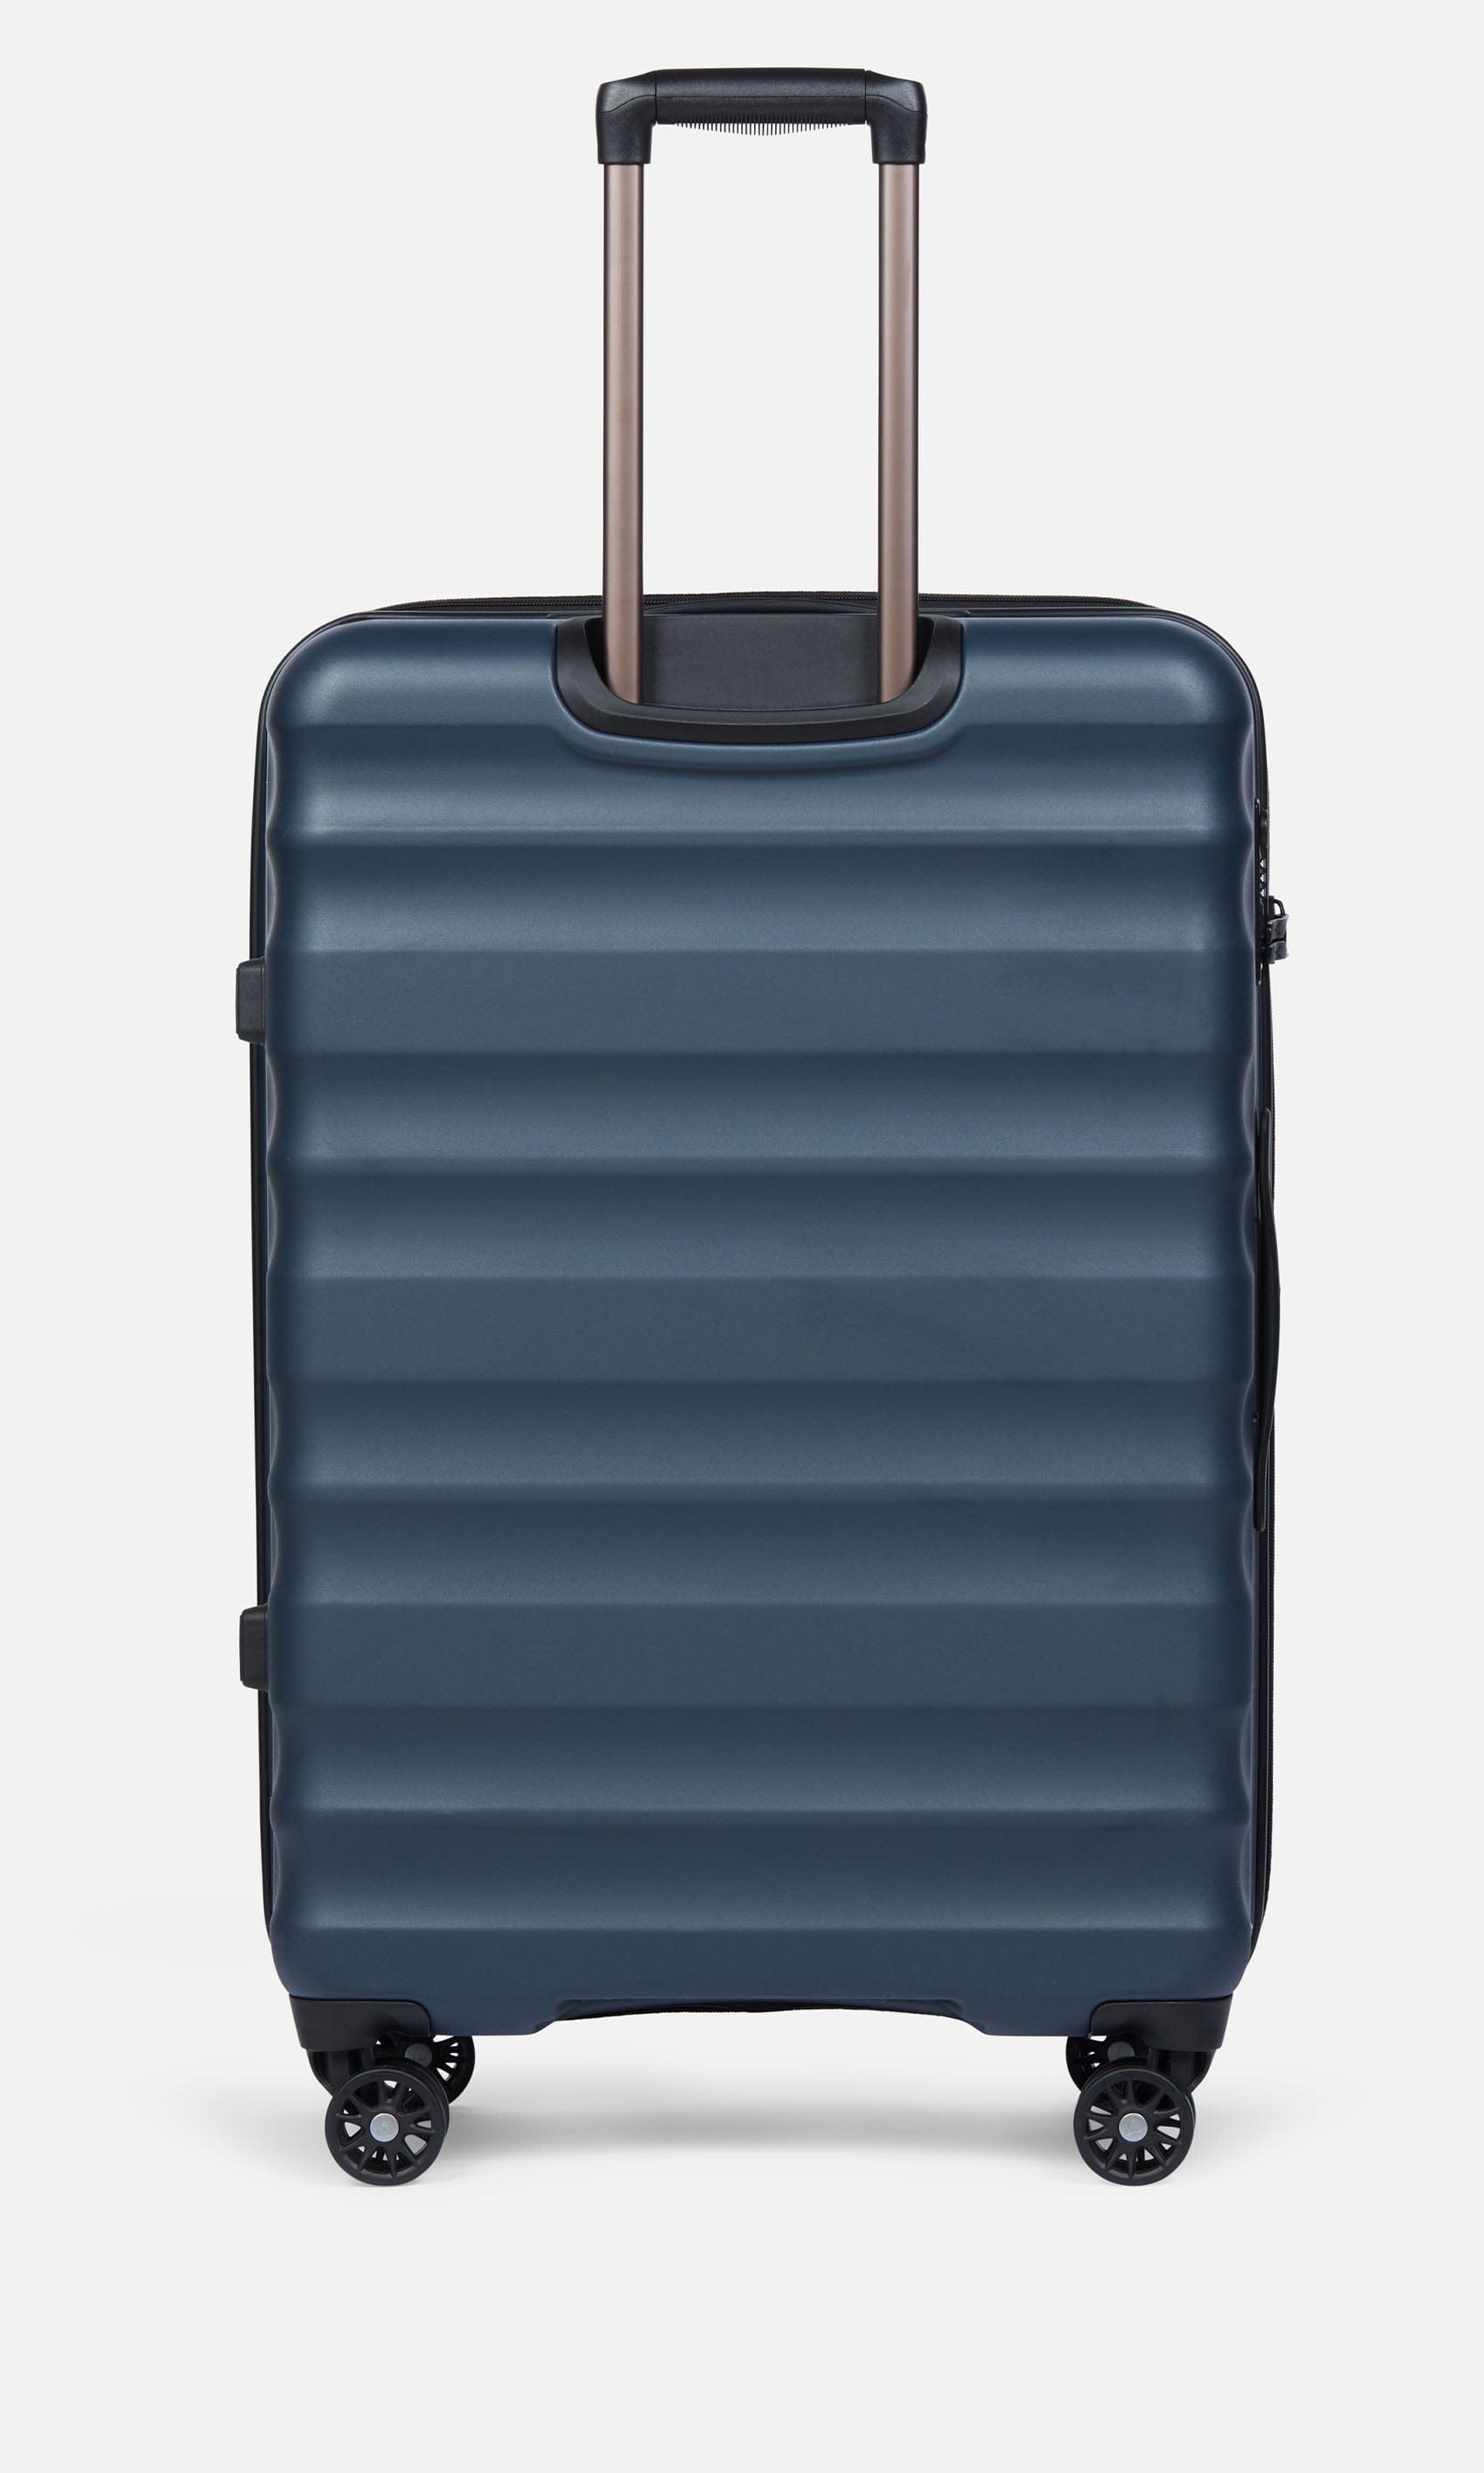 Antler Luggage -  Clifton large in navy - Hard Suitcases Clifton Large Suitcase Navy | Hard Suitcase | Antler UK